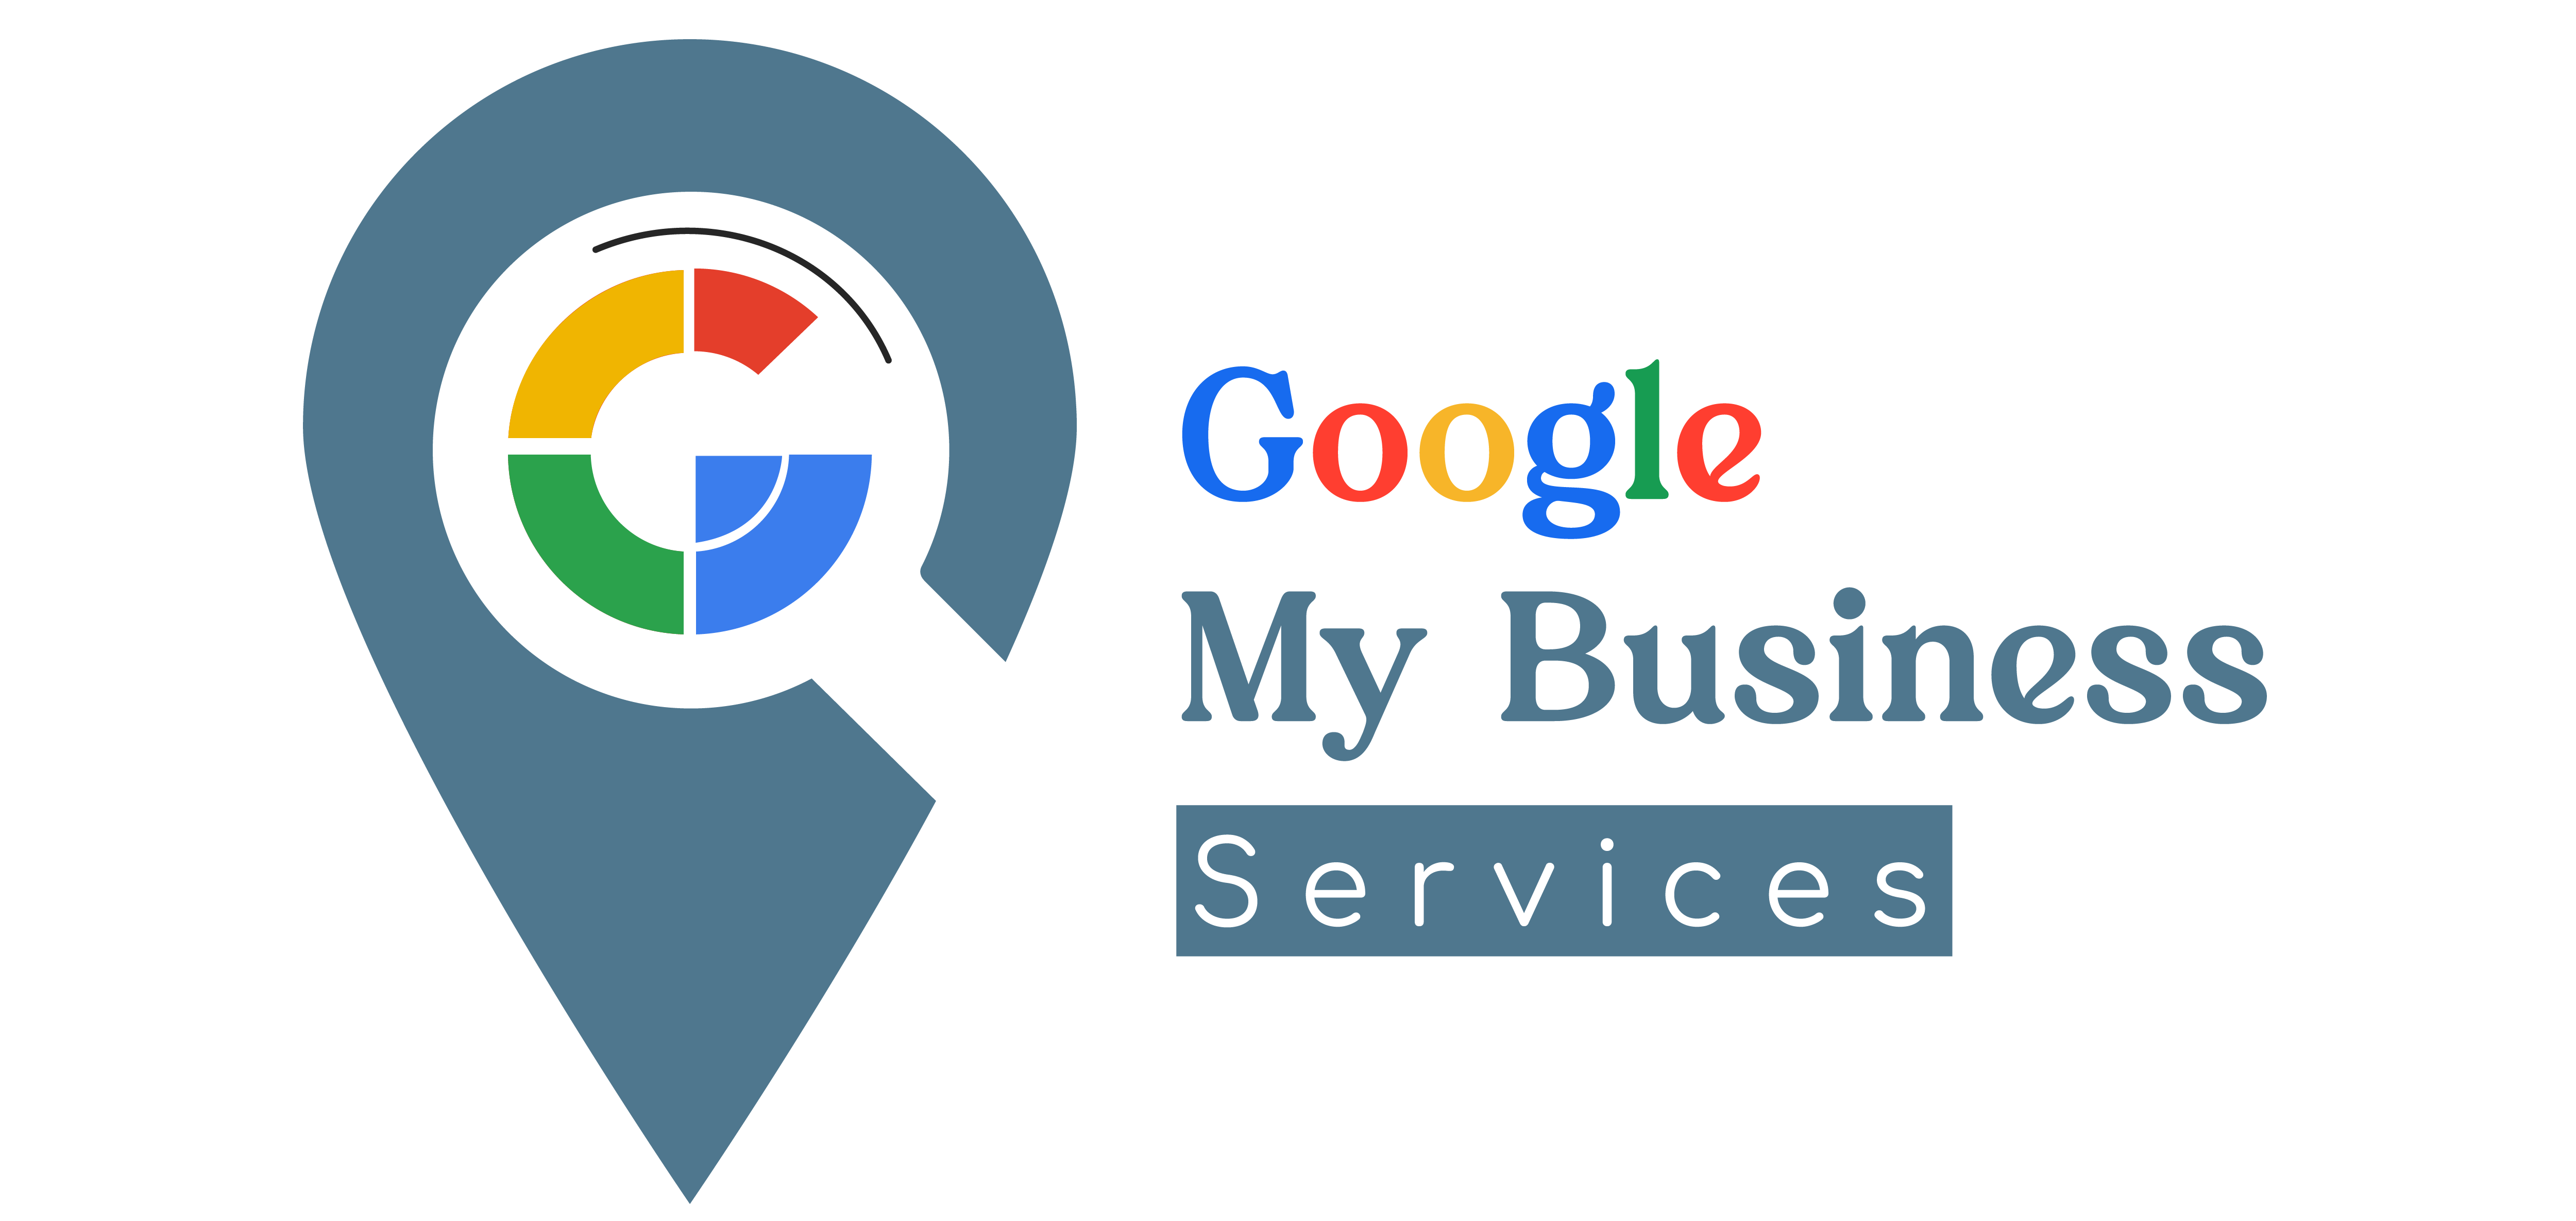 (c) Googlemybusinessservices.com